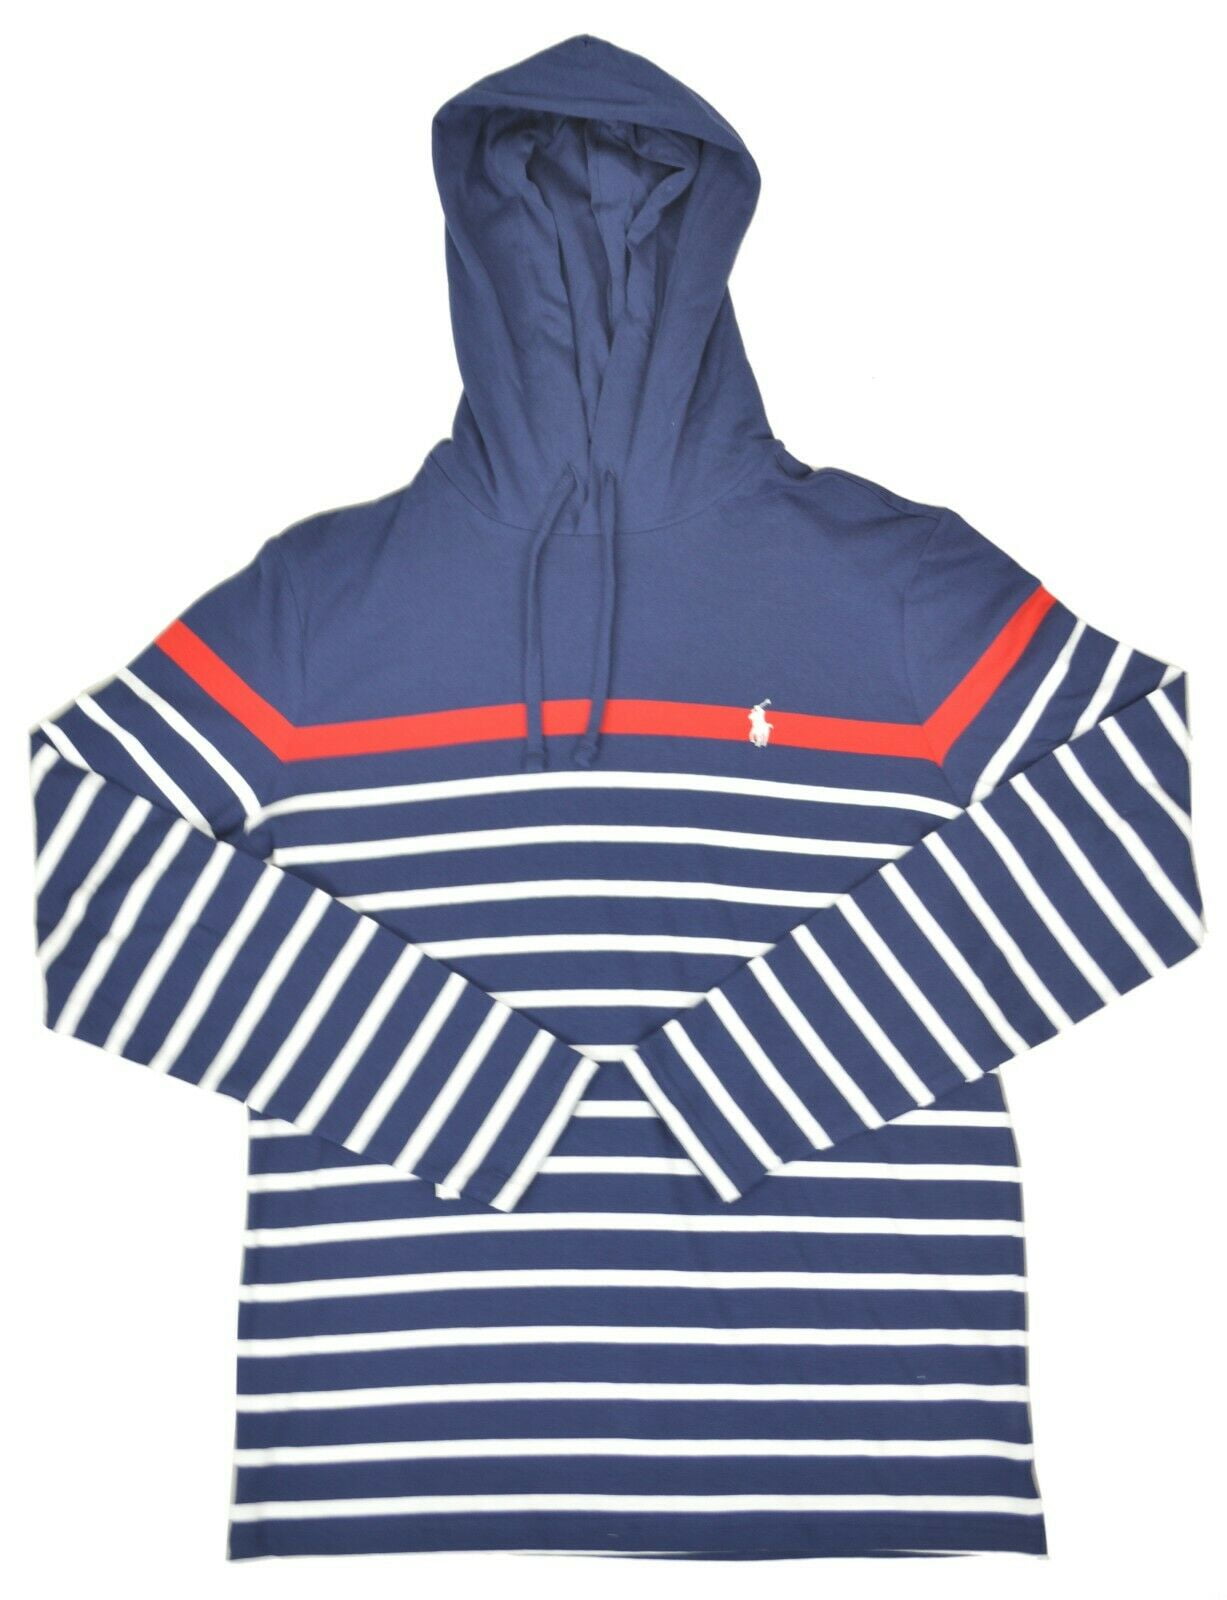 New Polo Ralph Lauren Mens Cotton Striped Jersey Hooded T-Shirt, Navy MU,  S, 3453-8